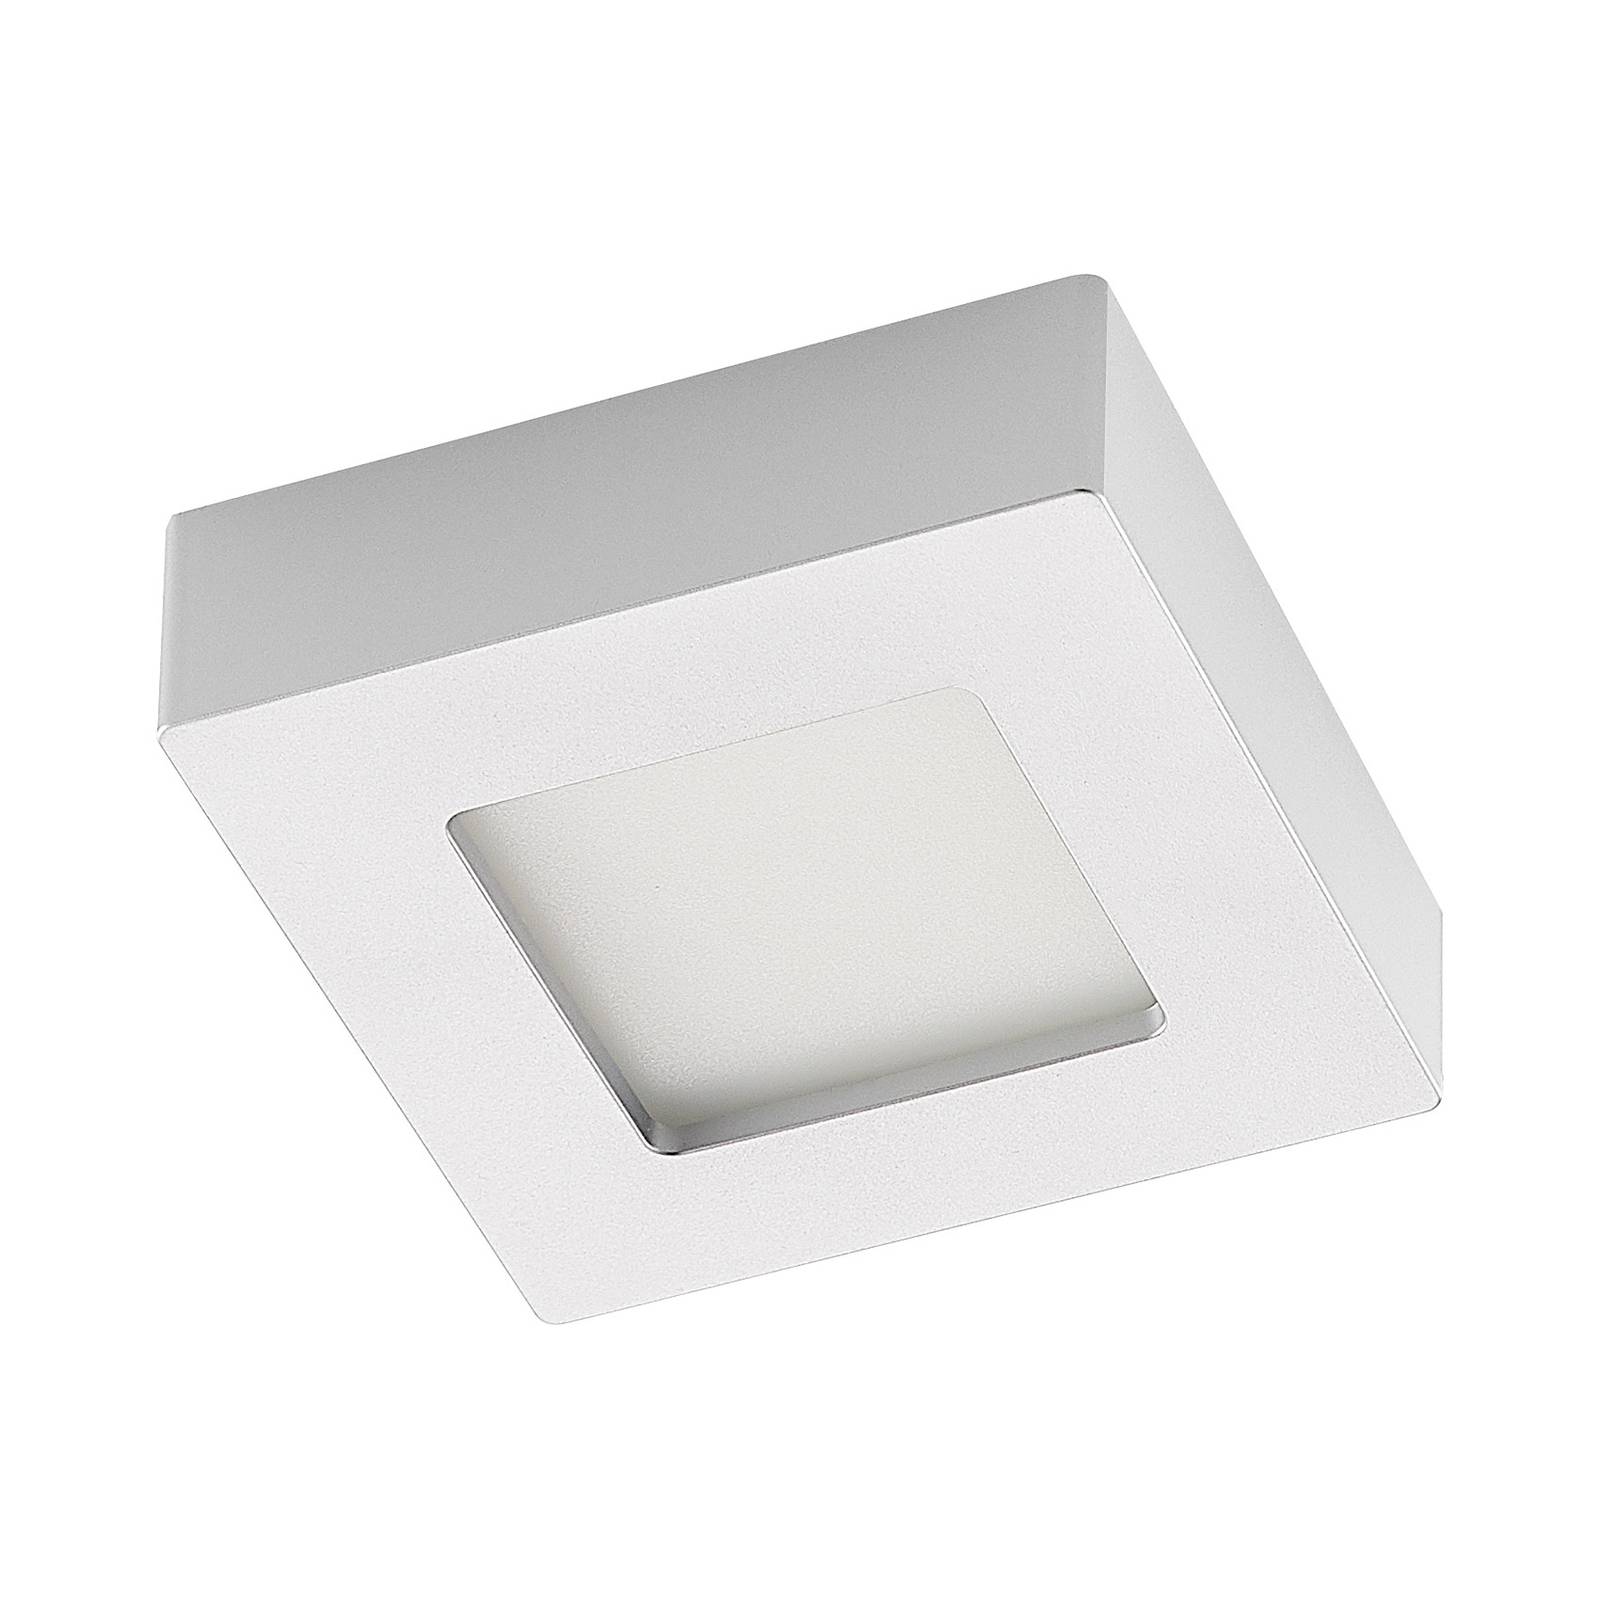 Prios Alette LED-Deckenleuchte, silber, 12,2 cm